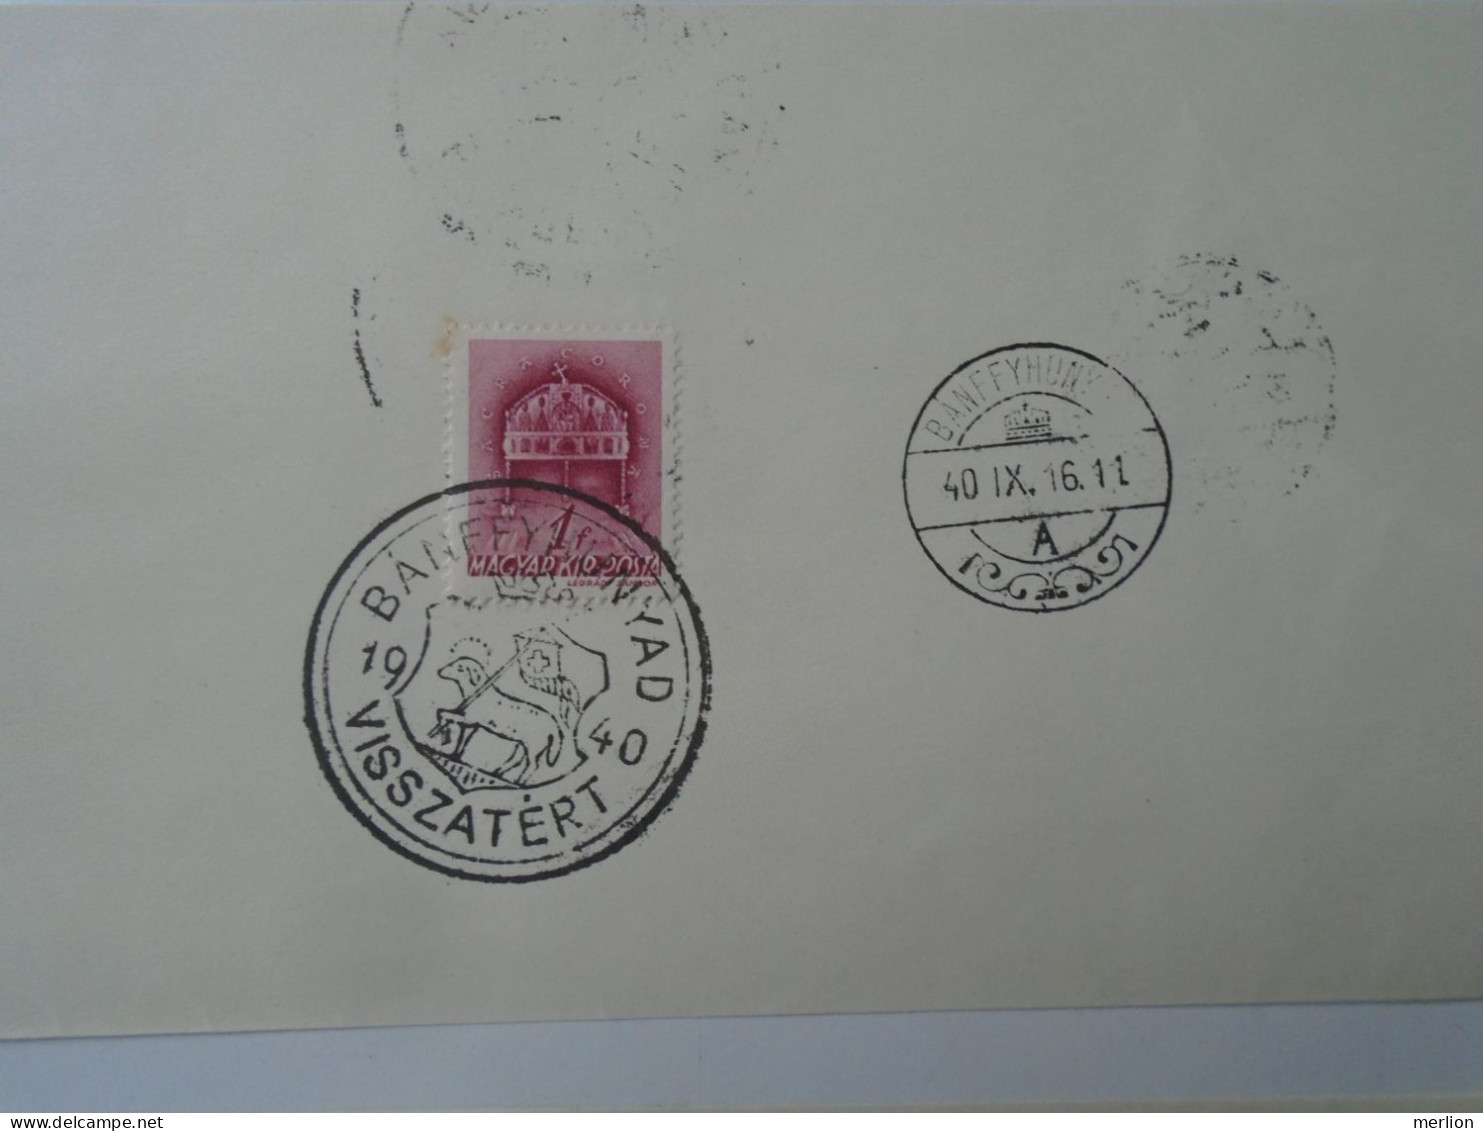 ZA451.24 Hungary- Bánffyhunyad, Beszterce, Nagyvárad, Nagyszalonta Visszatért -Commemorative Postmark 1940 - Storia Postale